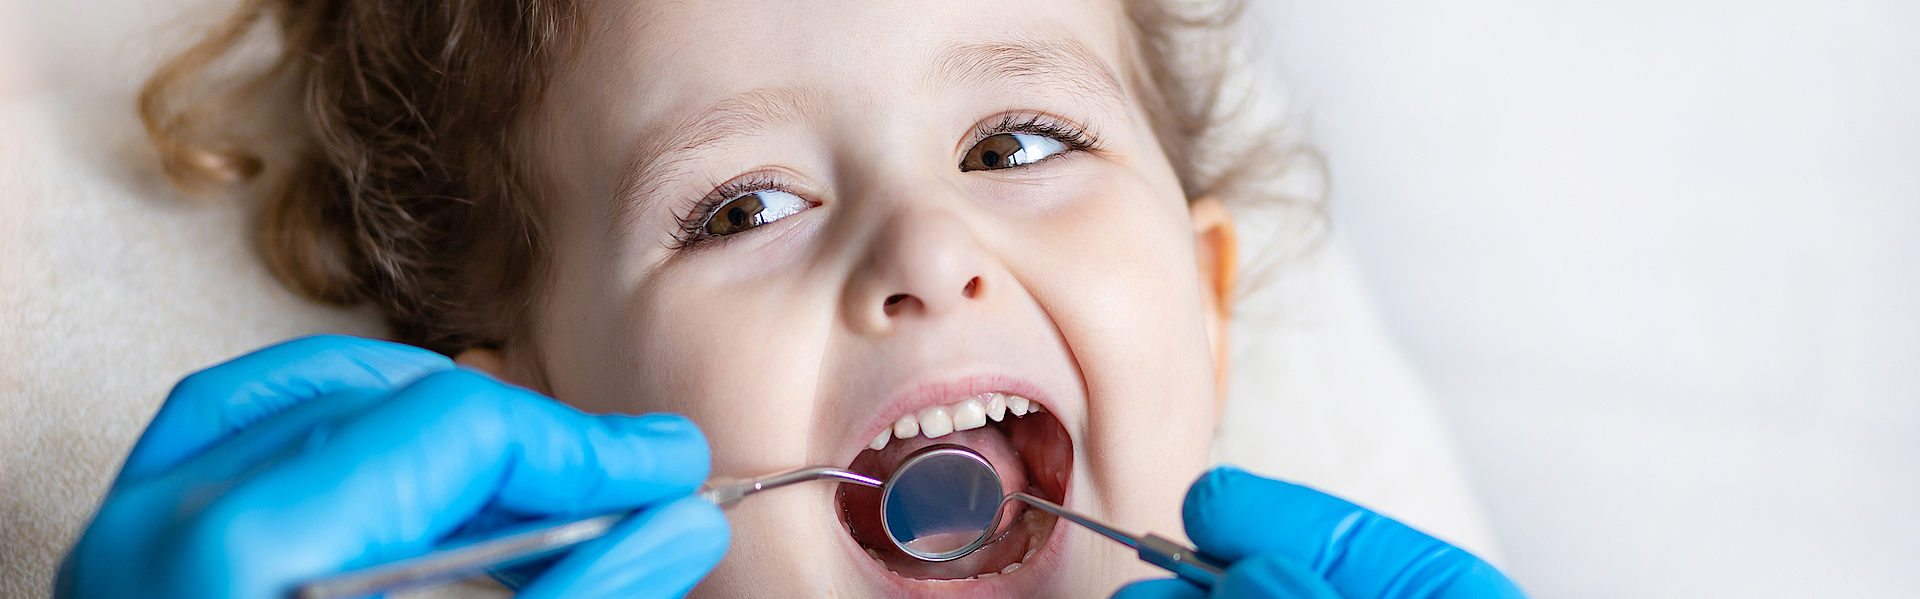 Ein kleines Mädchen mit braunen Locken liegt auf dem Untersuchungsstuhl beim Zahnarzt. Sie schaut den Arzt an. Er untersucht mit dem Spiegel ihre Milchzähne.